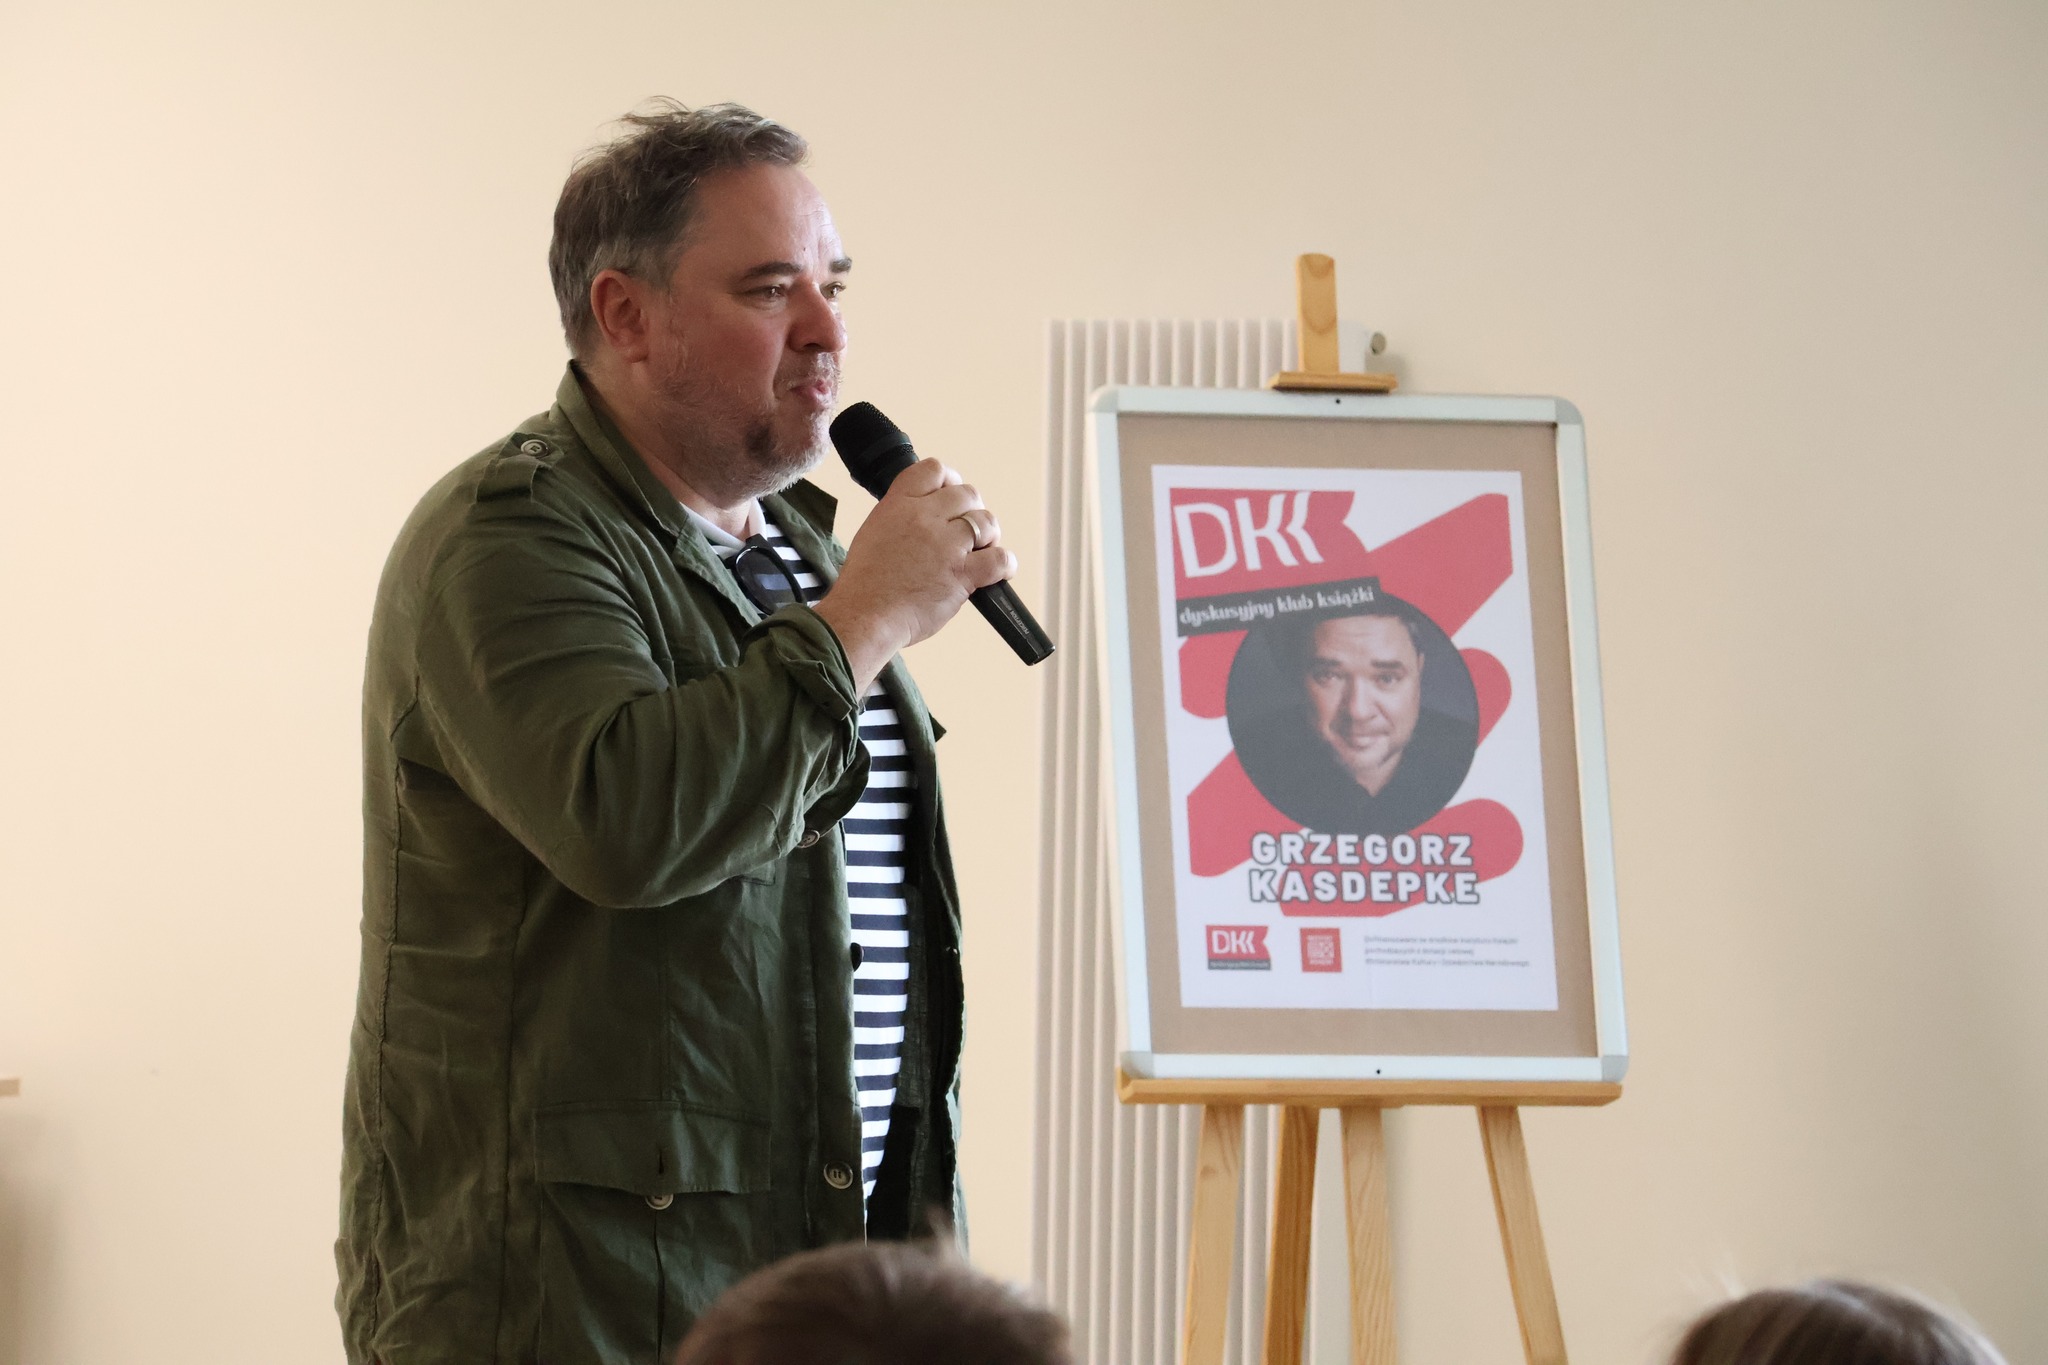 Fot. BP w Mońkach. Autor mówi przez mikrofon, za nim na sztaludze plakat promujący spotkanie autorskie z logo DKK